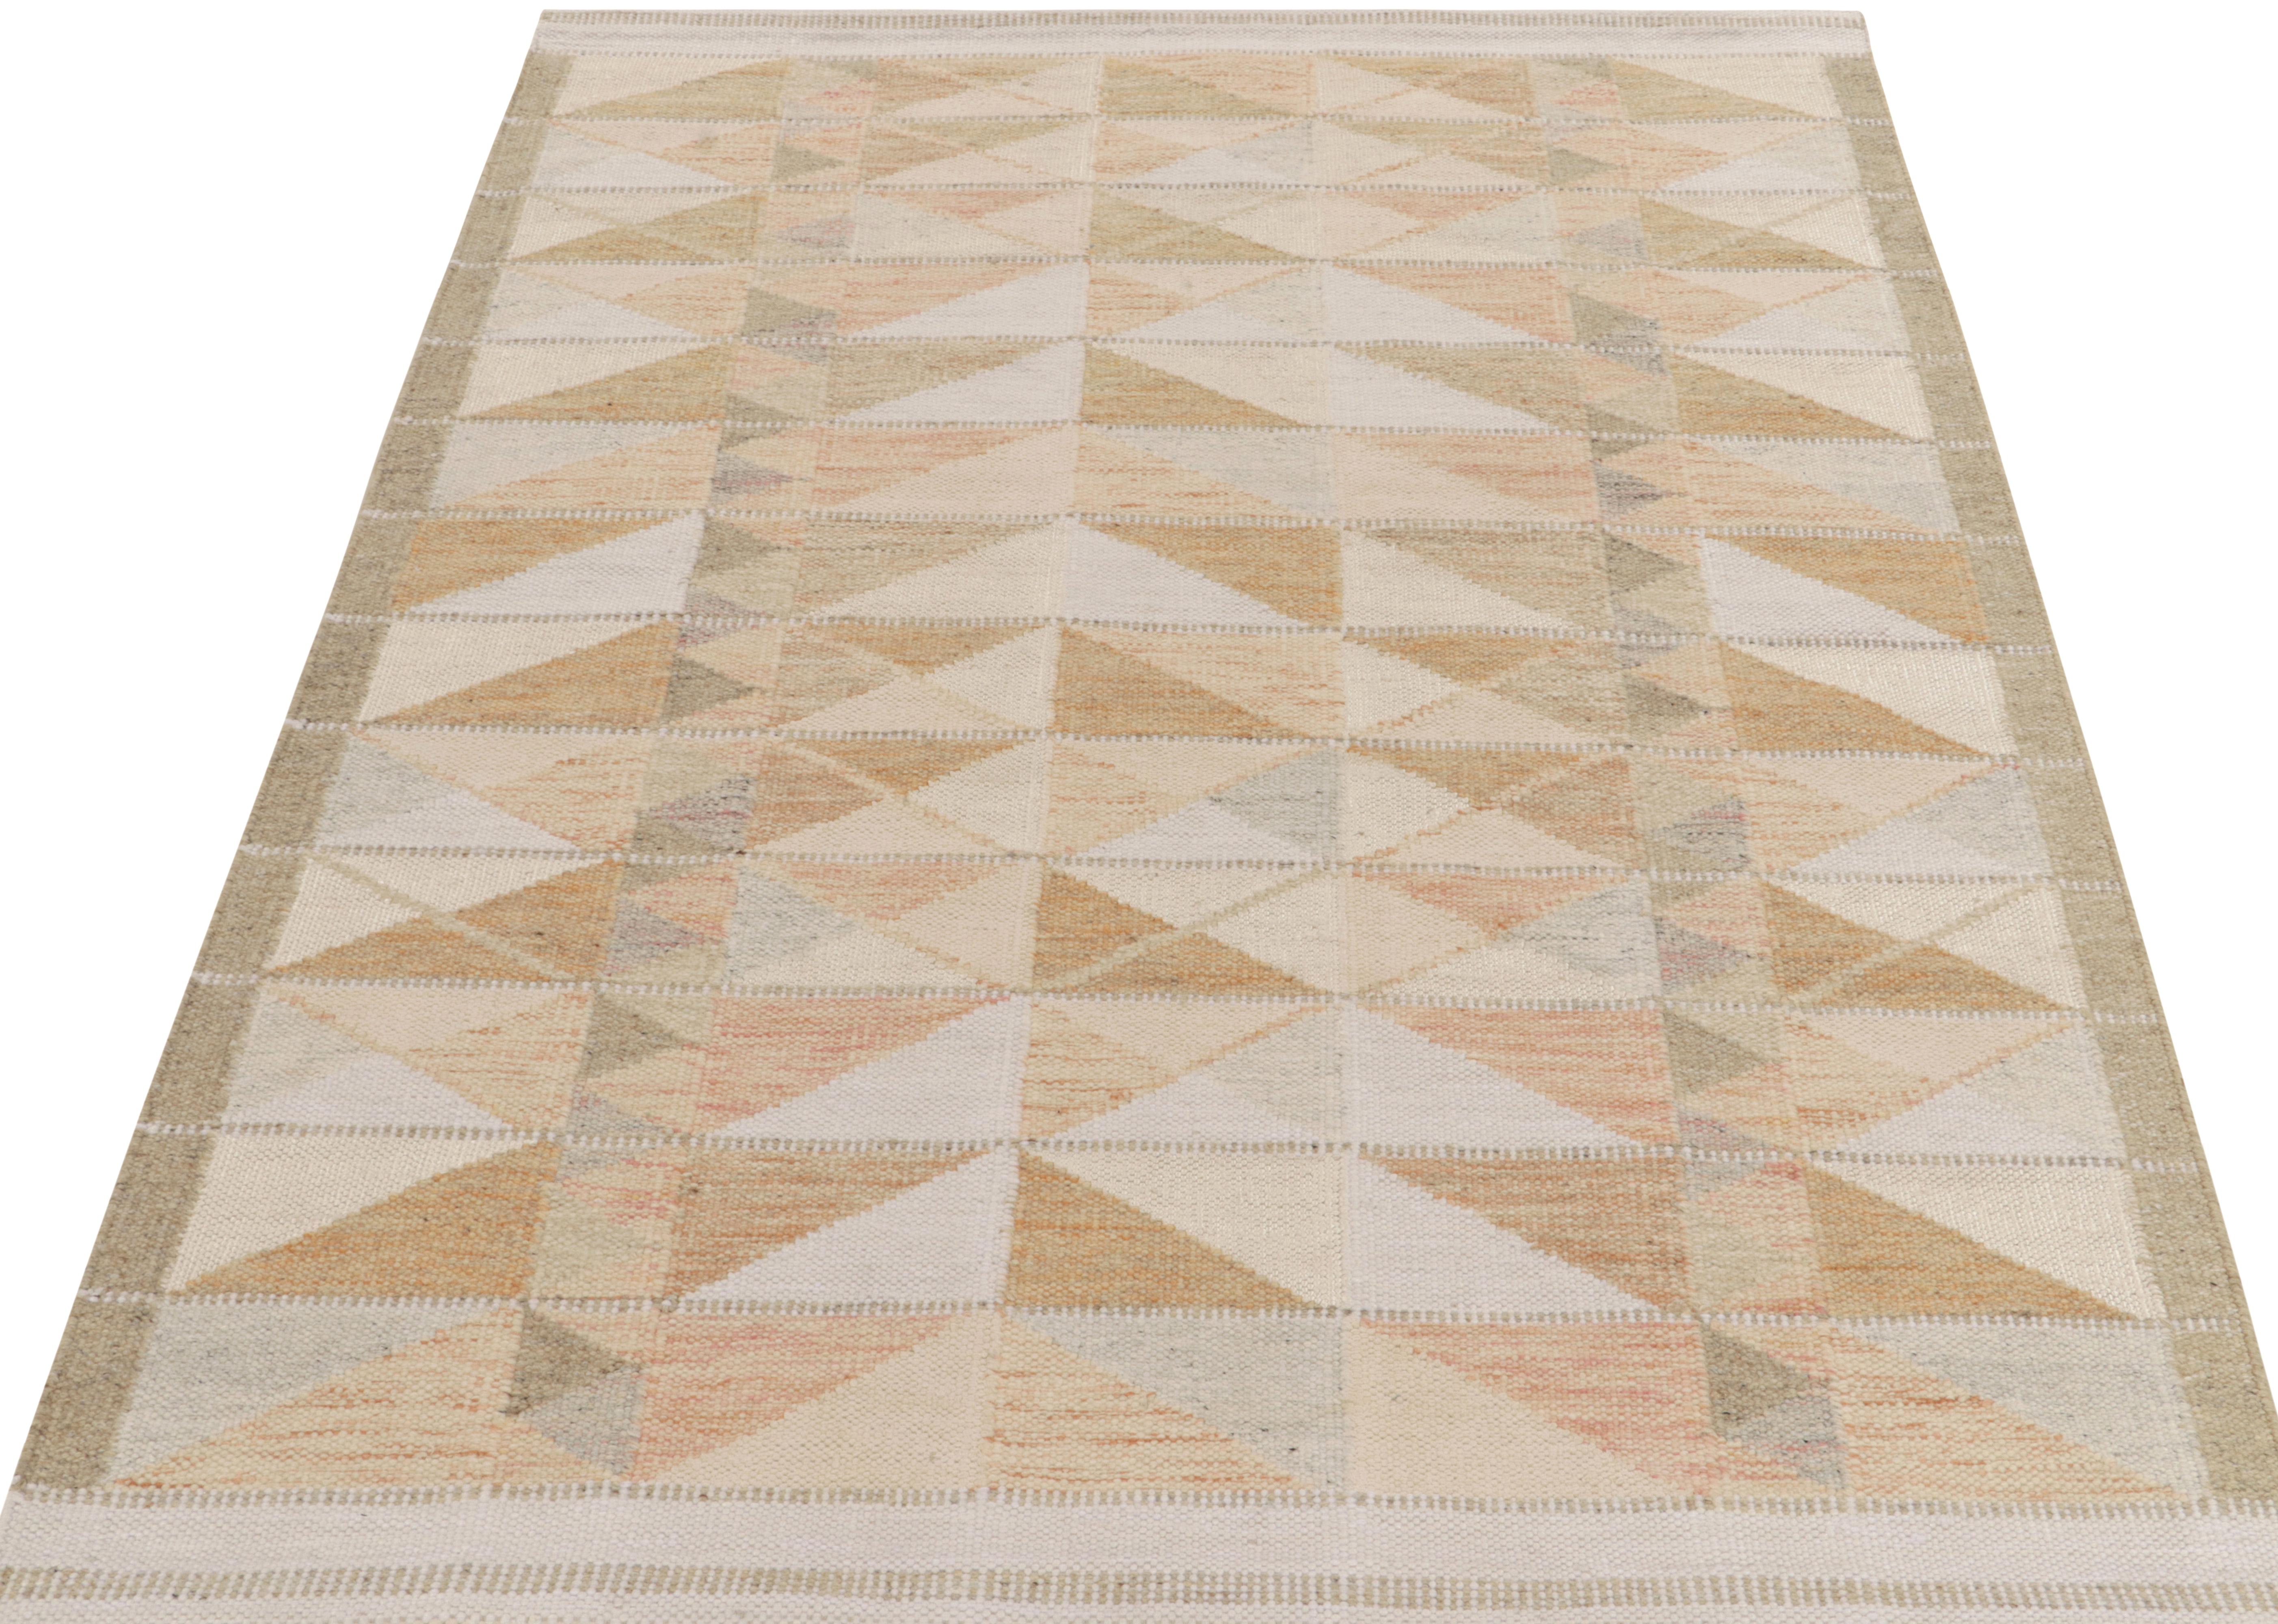 Le design personnalisé de kilim de style scandinave de Rug & Kilim, à partir de notre célèbre texture à tissage plat de la collection titulaire primée. Dans cette échelle 6 x 8, le design bénéficie de la finesse de l'esthétique suédoise, avec un